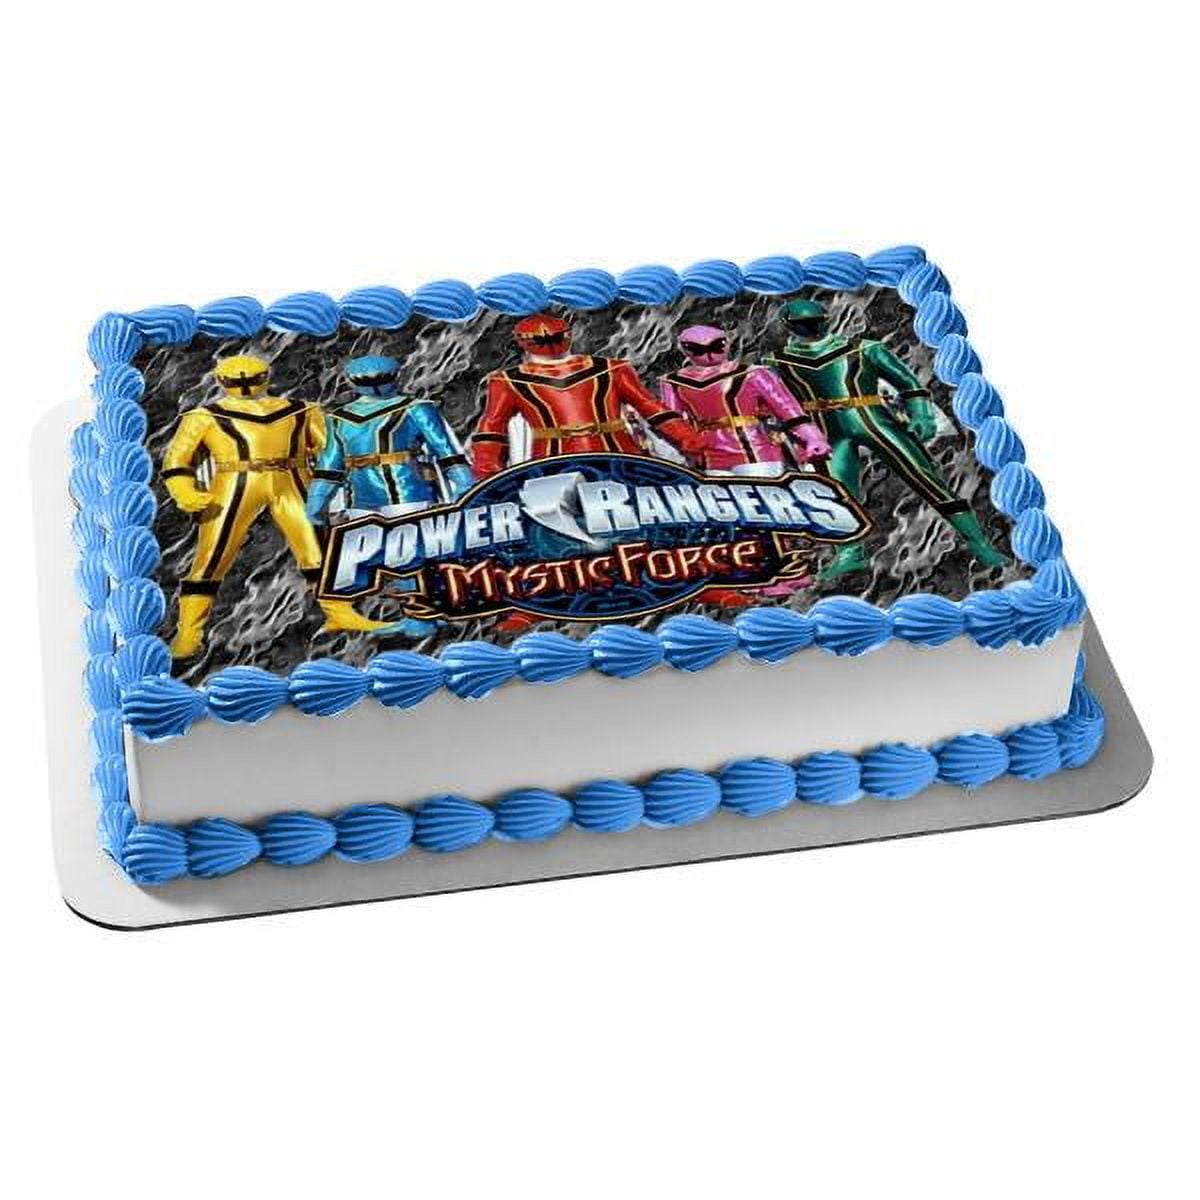 10+ Power Ranger Cakes